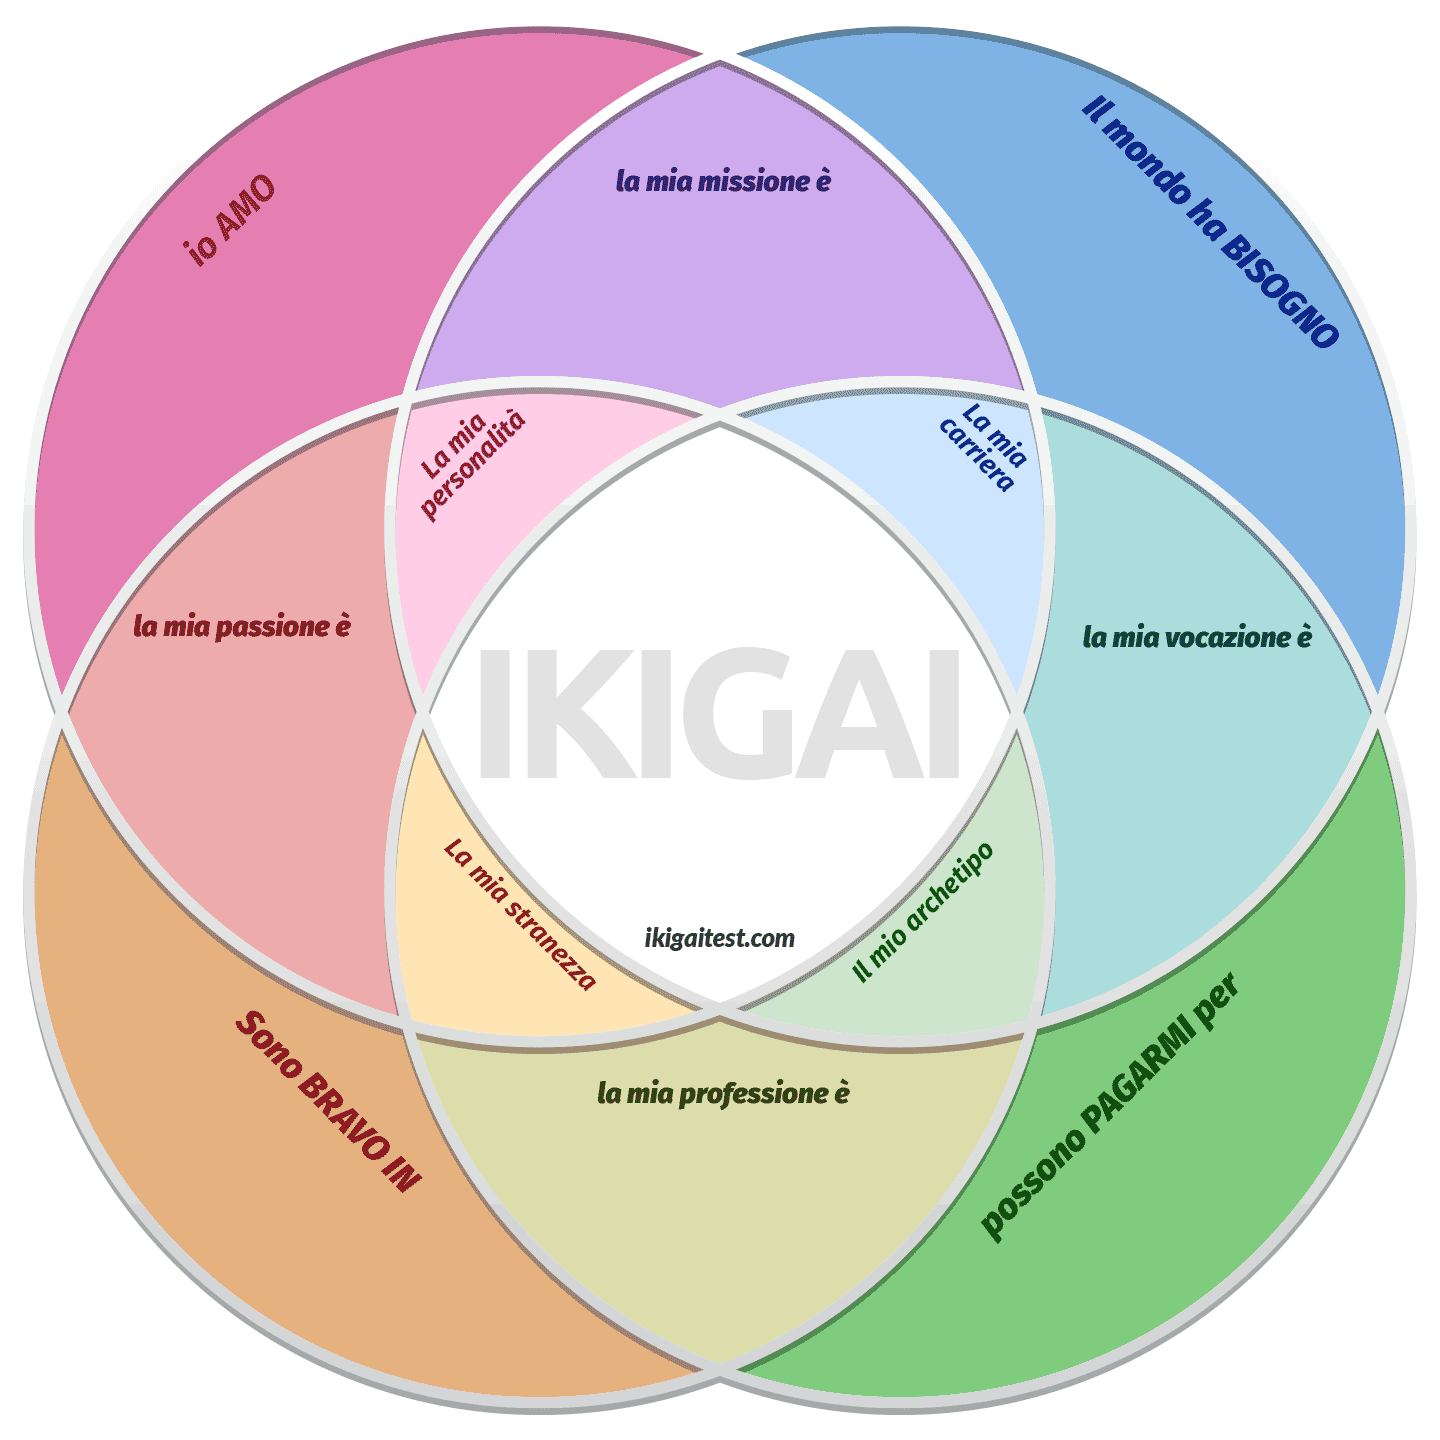 Download gratuito del modello di diagramma ikigai